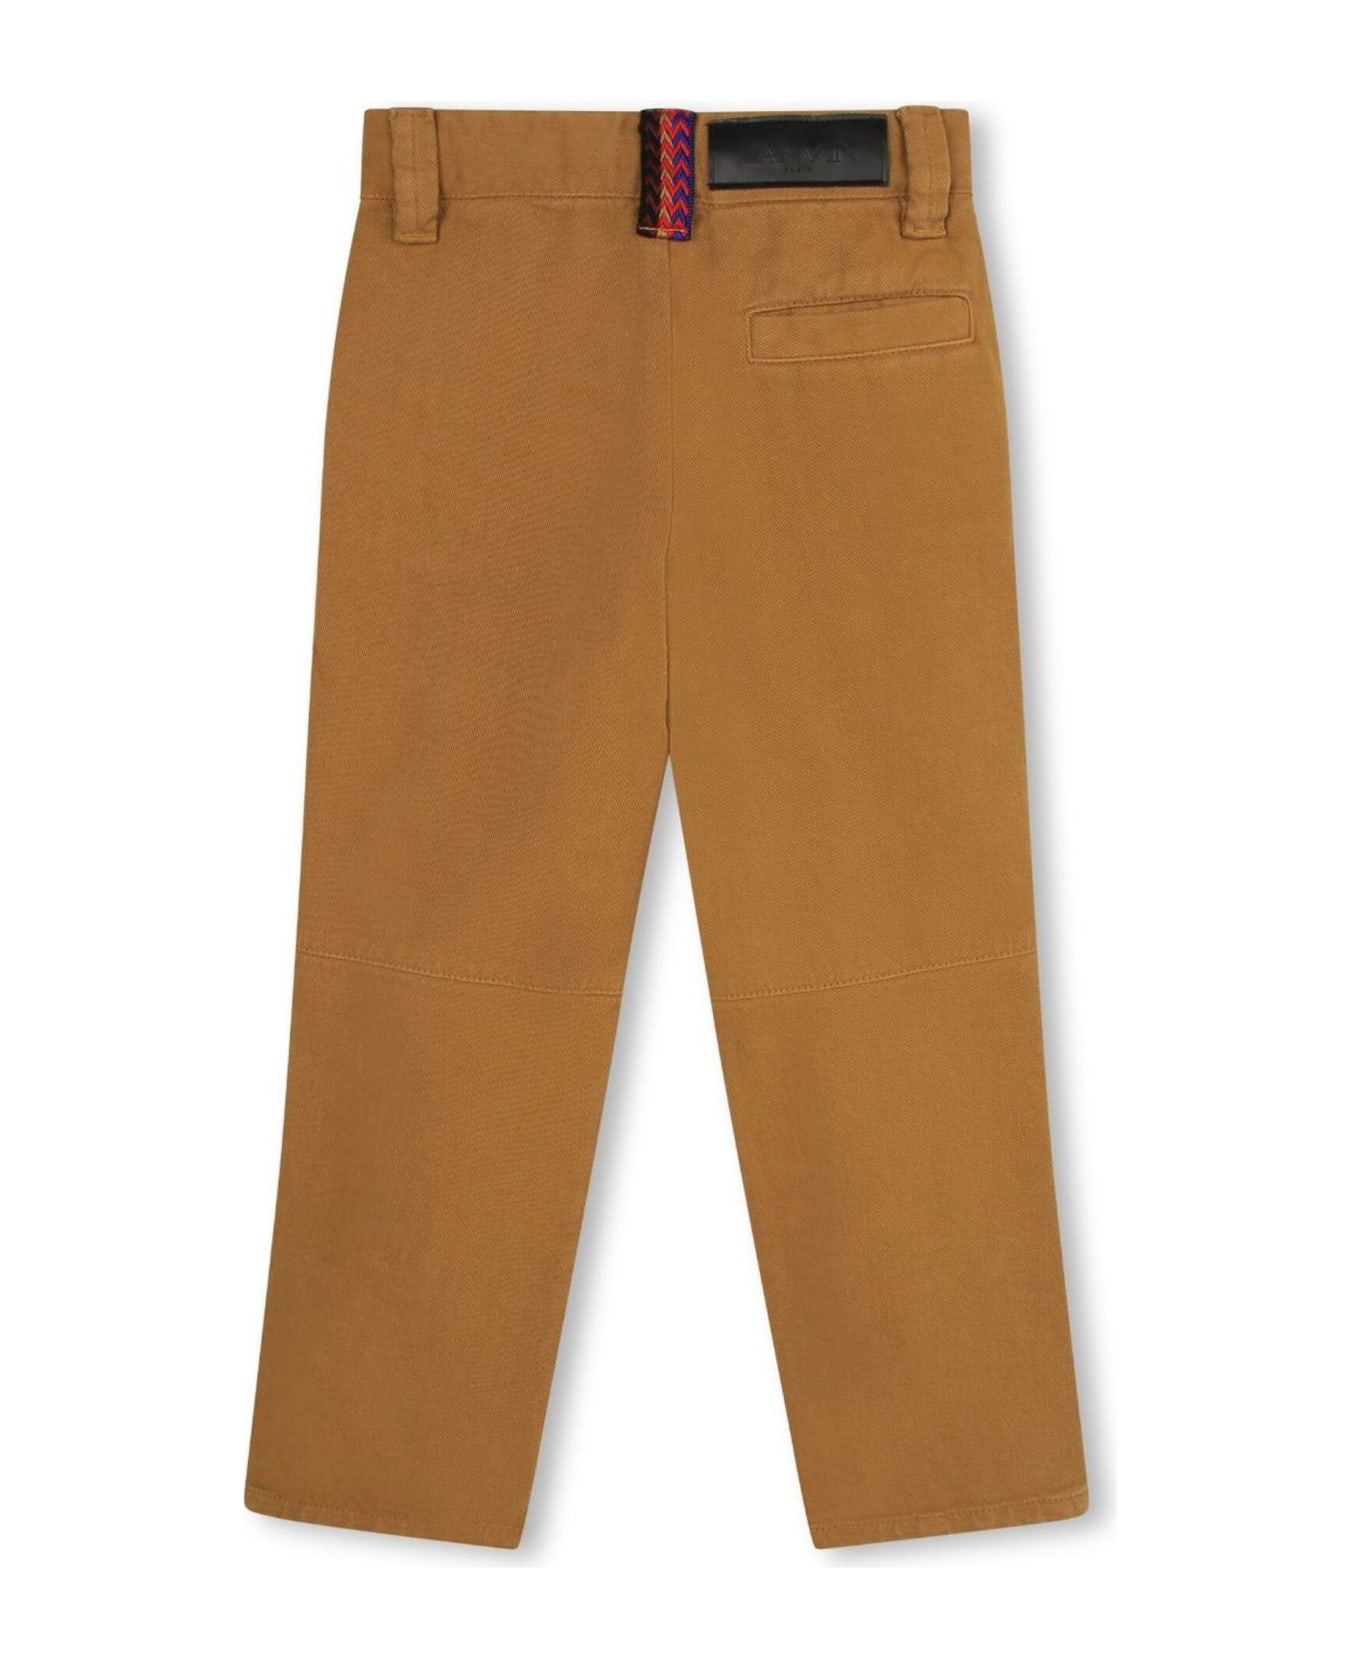 Lanvin Butterscotch Brown Cotton Trousers - Beige